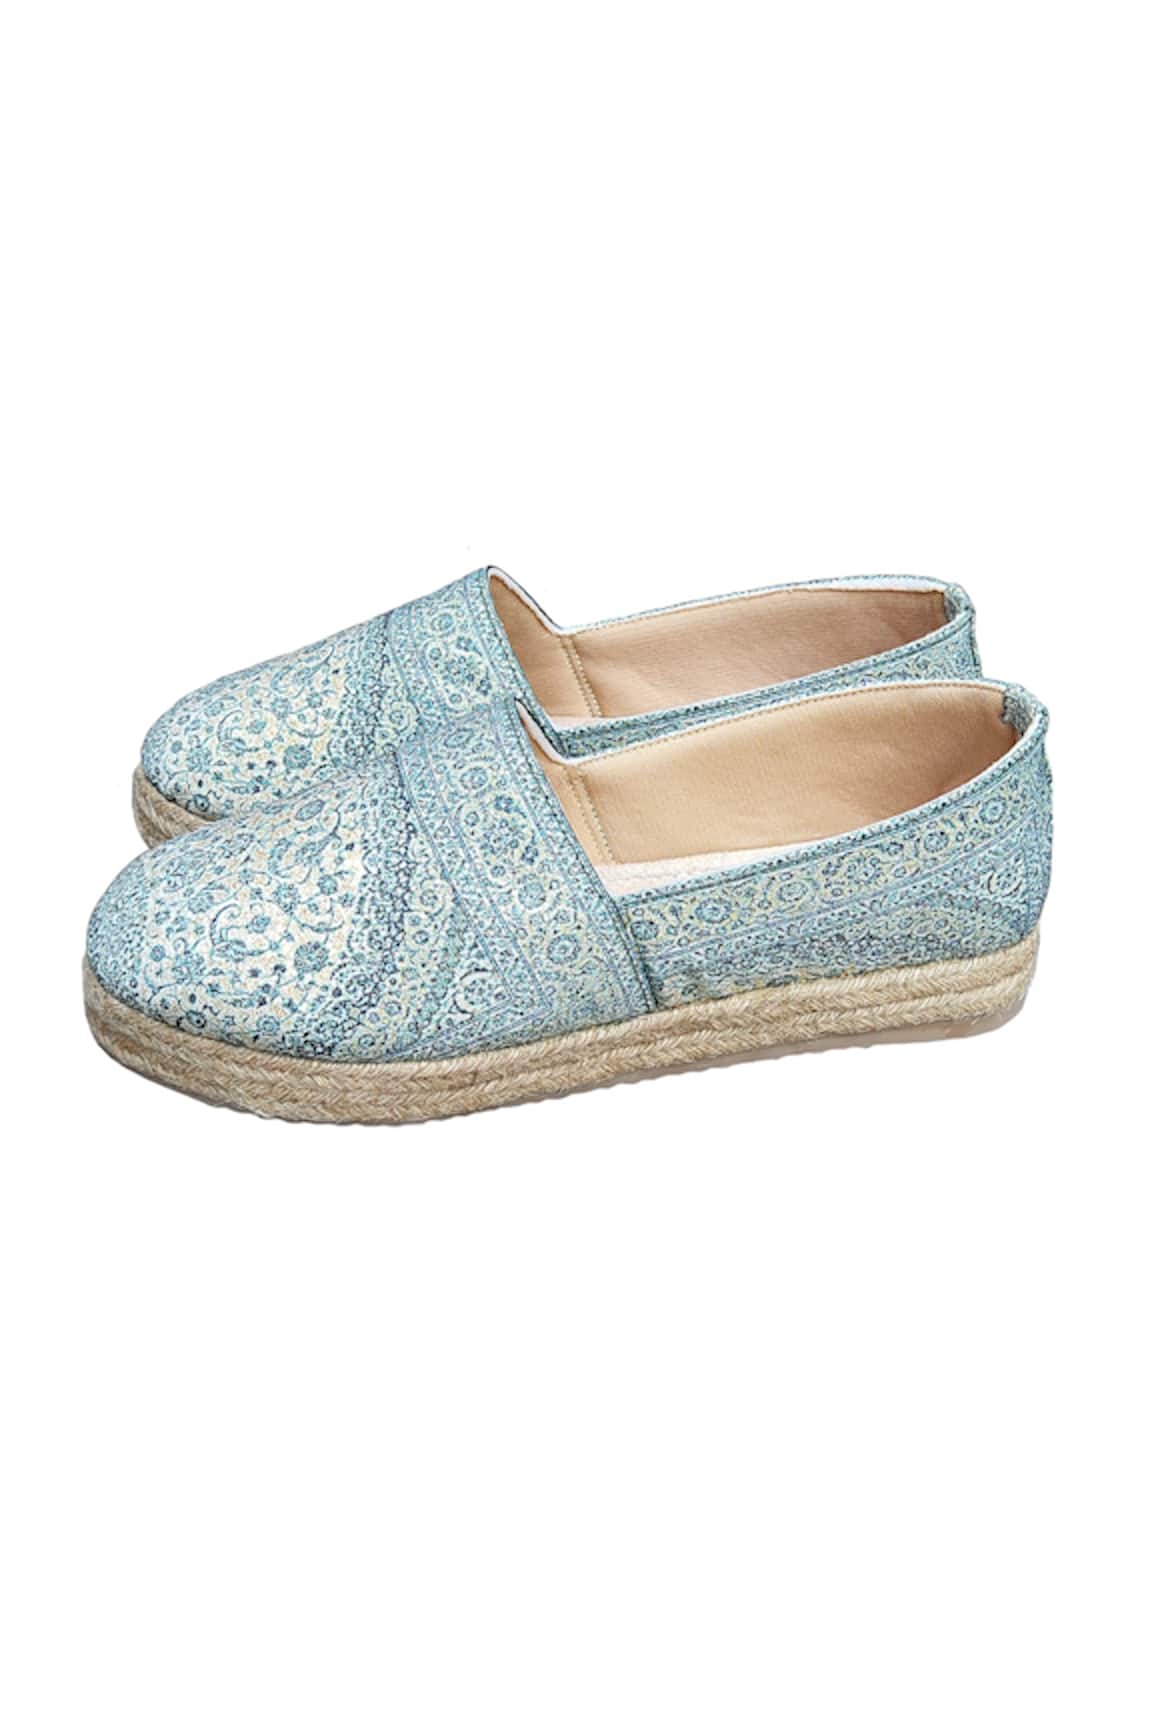 Cinderella by Heena Yusuf Floral Summer Slip-On Sneakers